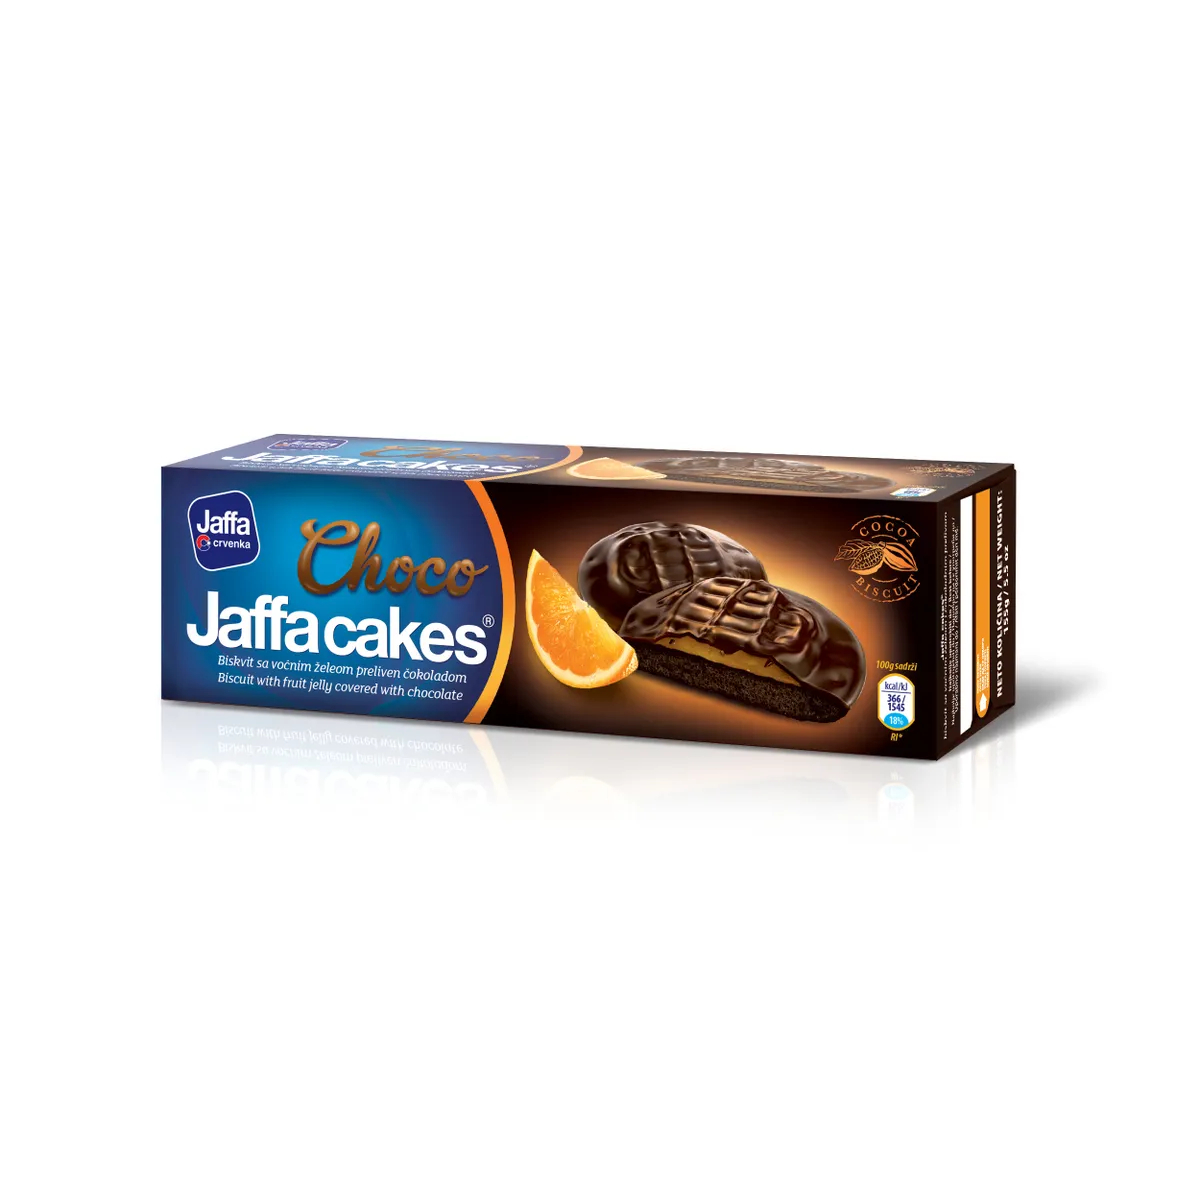 Печенье бисквитное Jaffa cakes Шоколад, 155 г разрыхлитель теста dr oetker для бисквита 25 гр